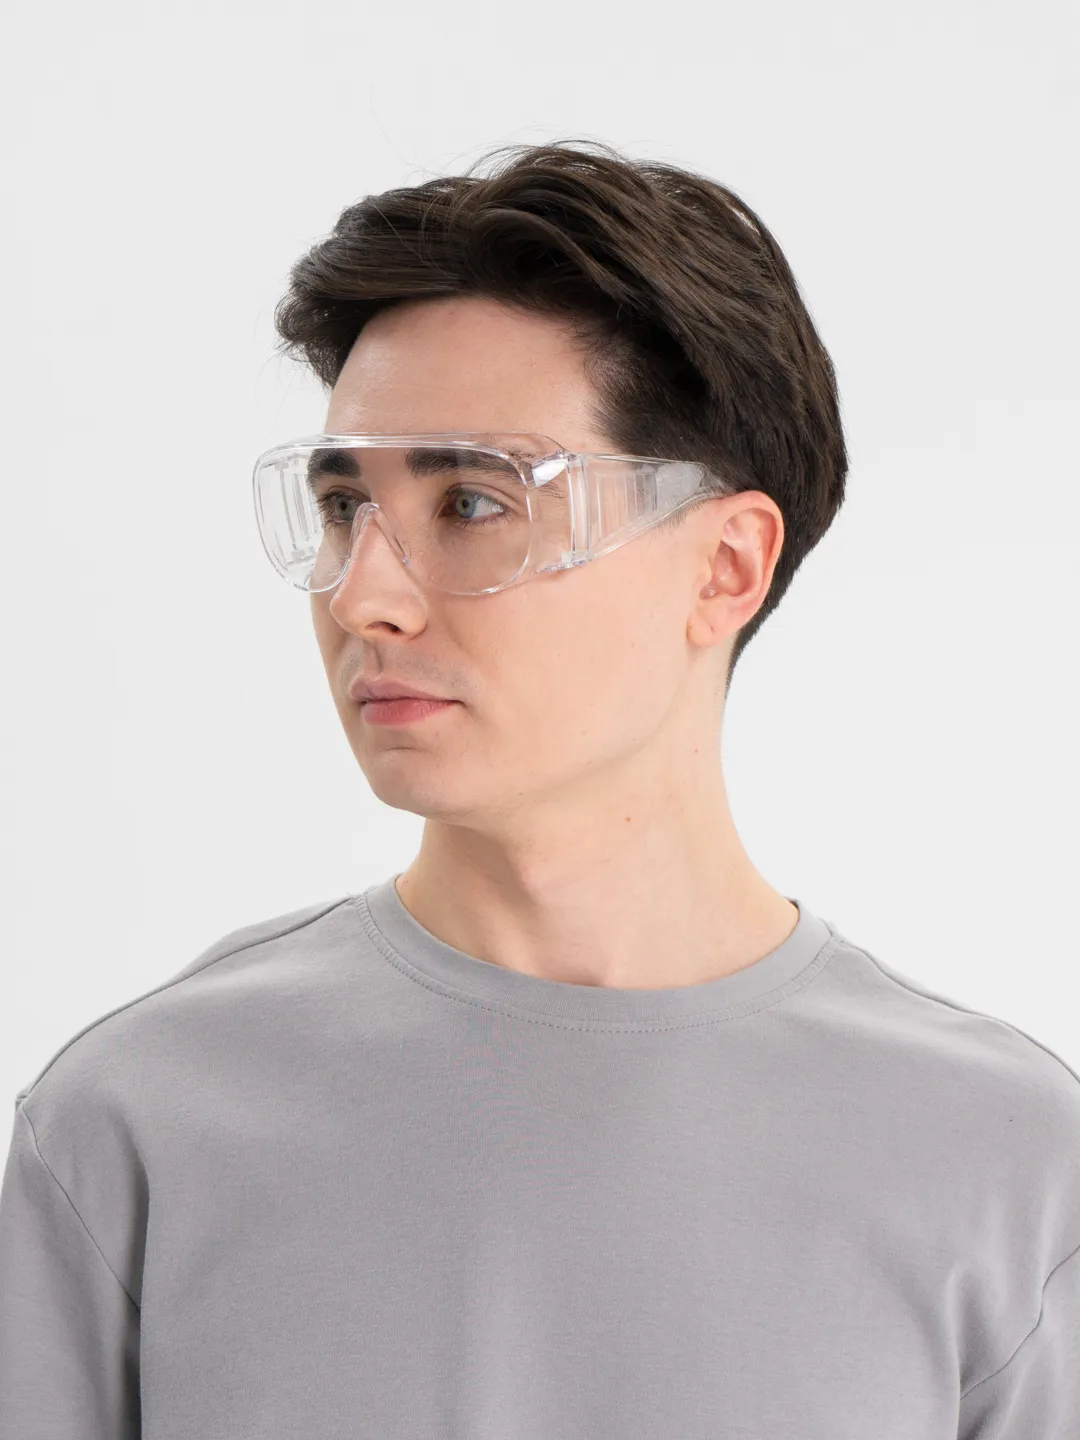 Очки защитные, строительные, медицинские РОСОМЗ О35 ВИЗИОН прозрачные, 13511 защитные очки росомз